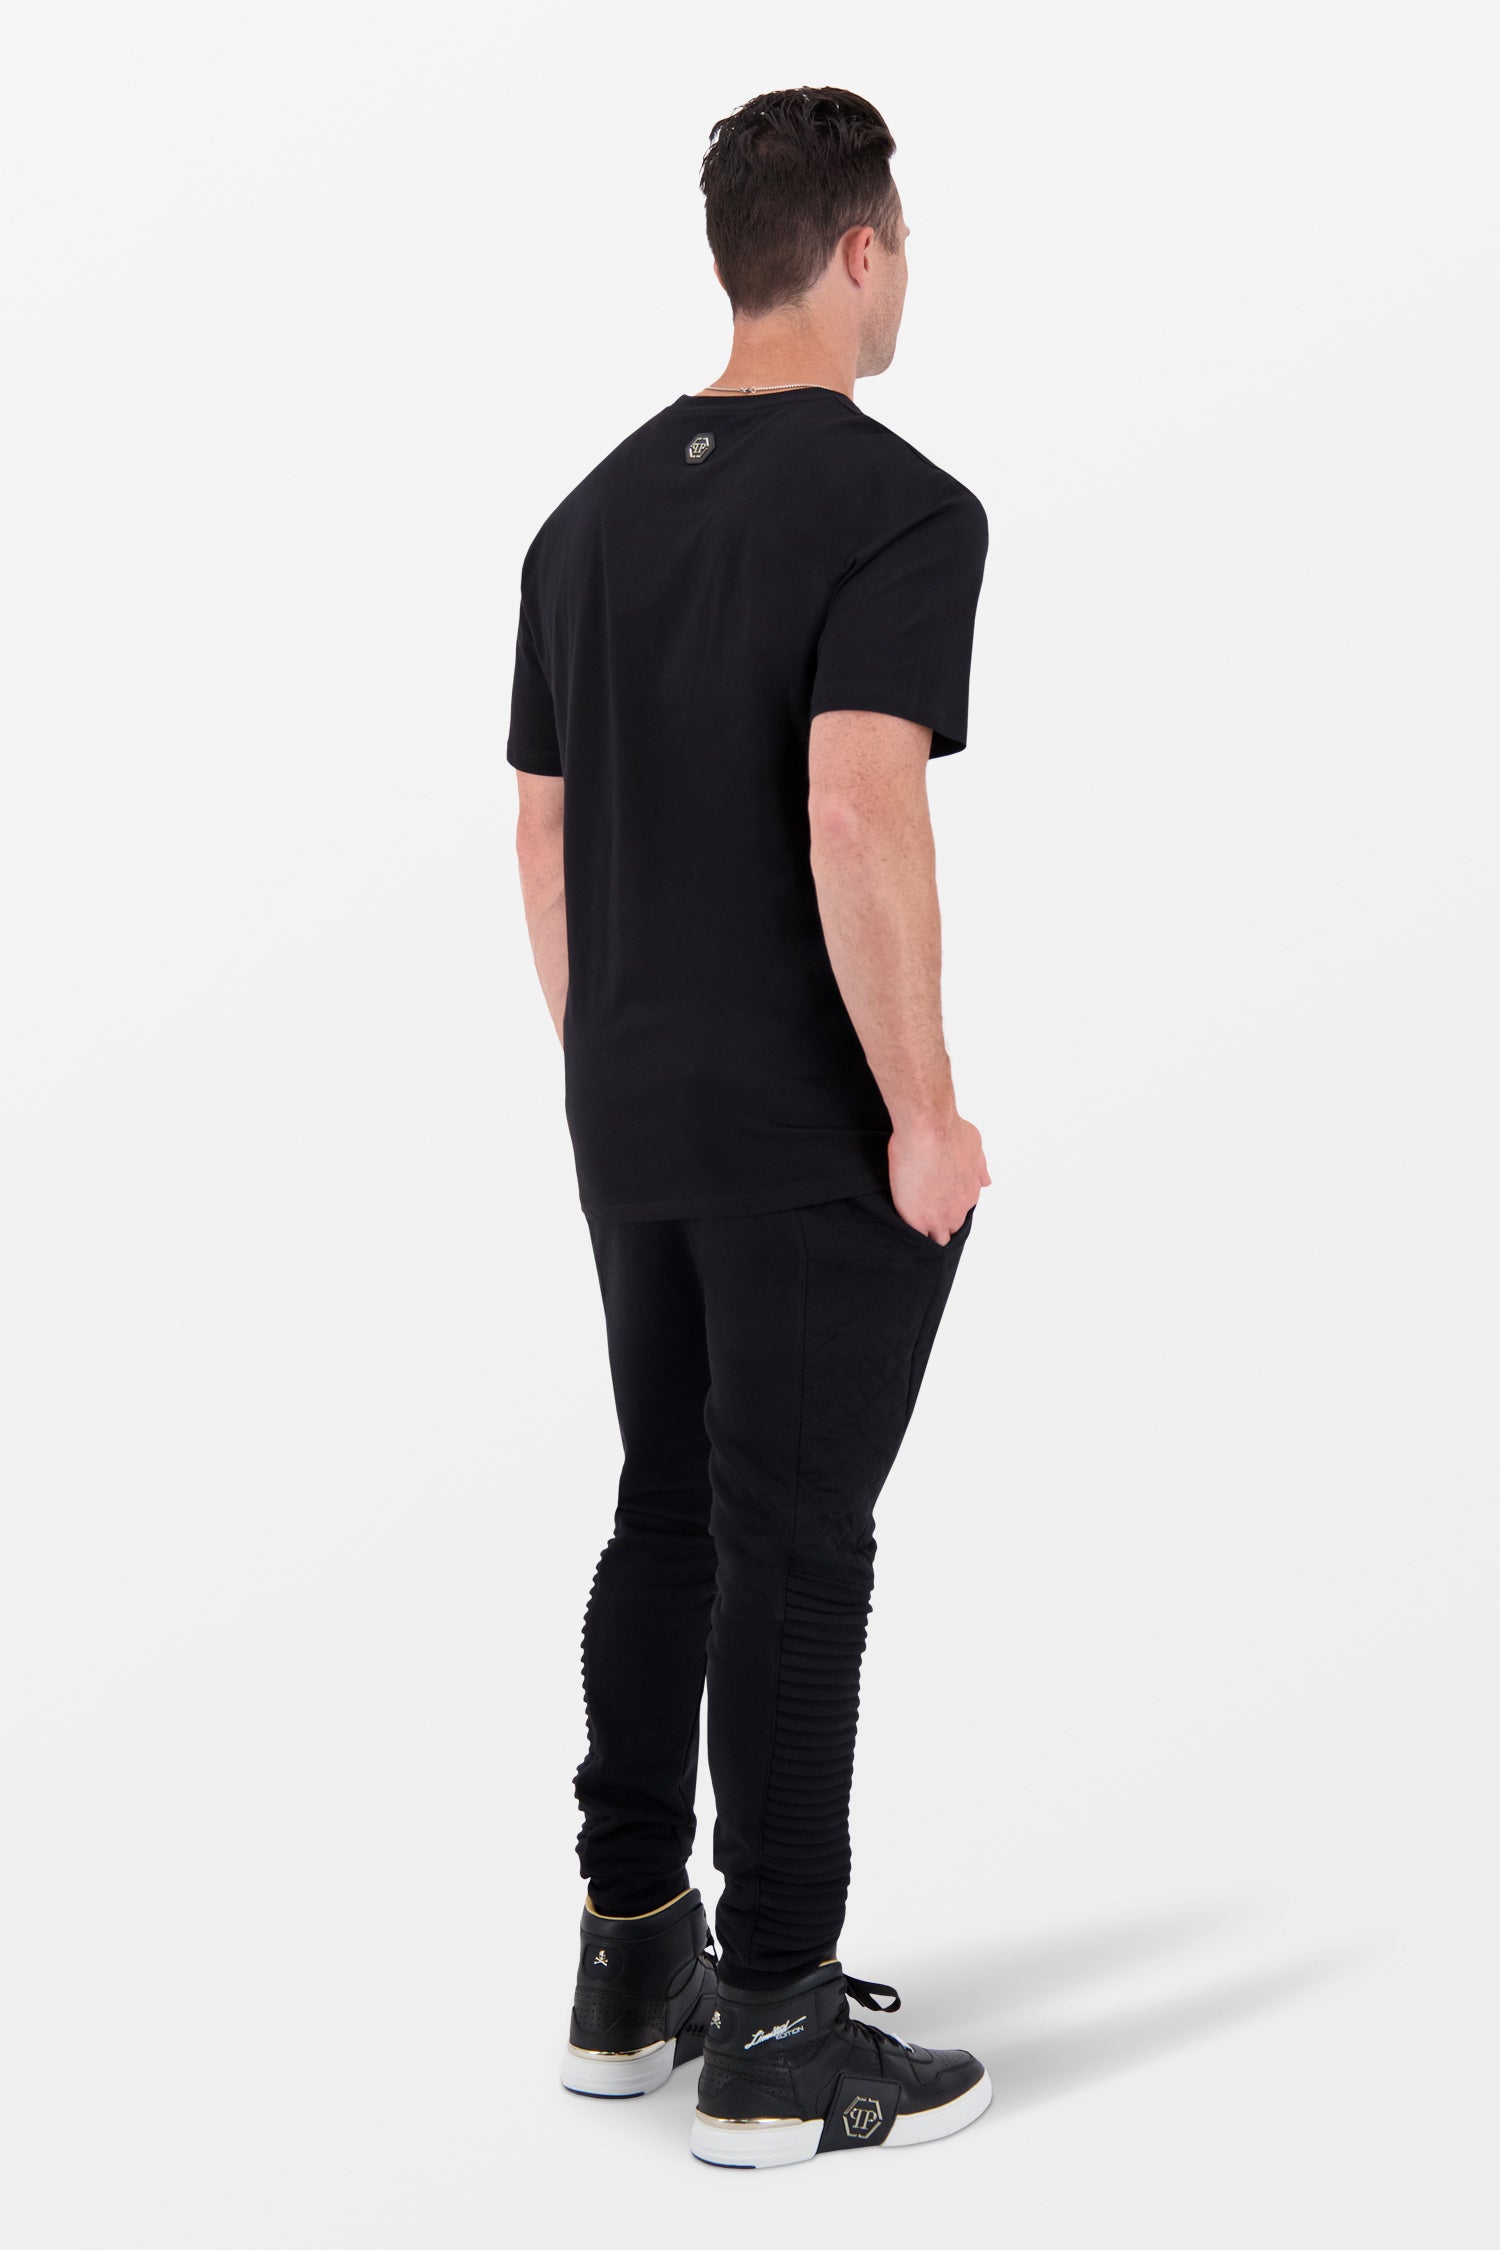 Philipp Plein Black Round Neck SS Lil’ $hark T-Shirt